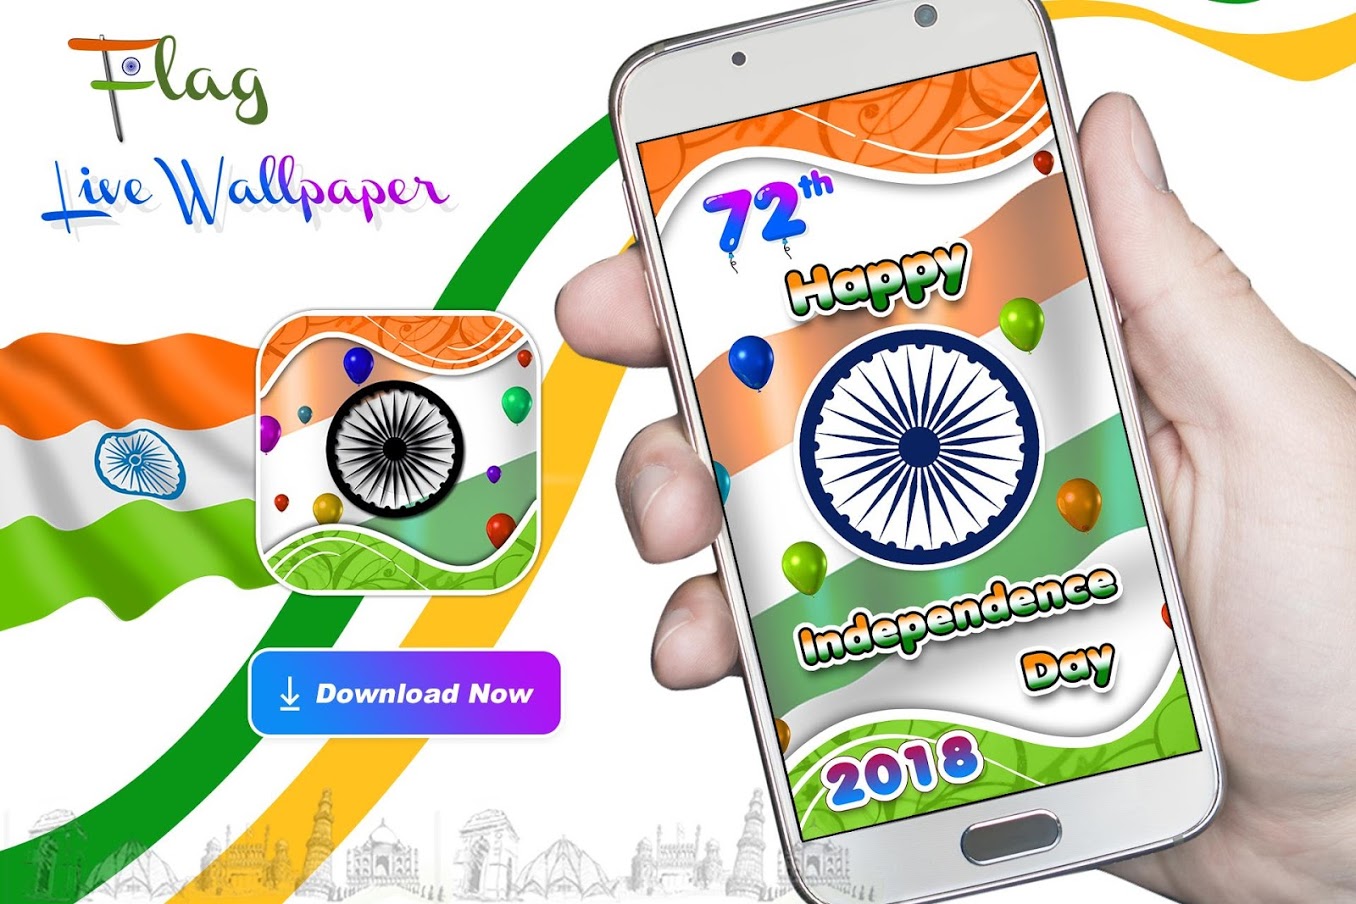 festa dell'indipendenza live wallpaper,tecnologia,grafica,cellulare,smartphone,aggeggio